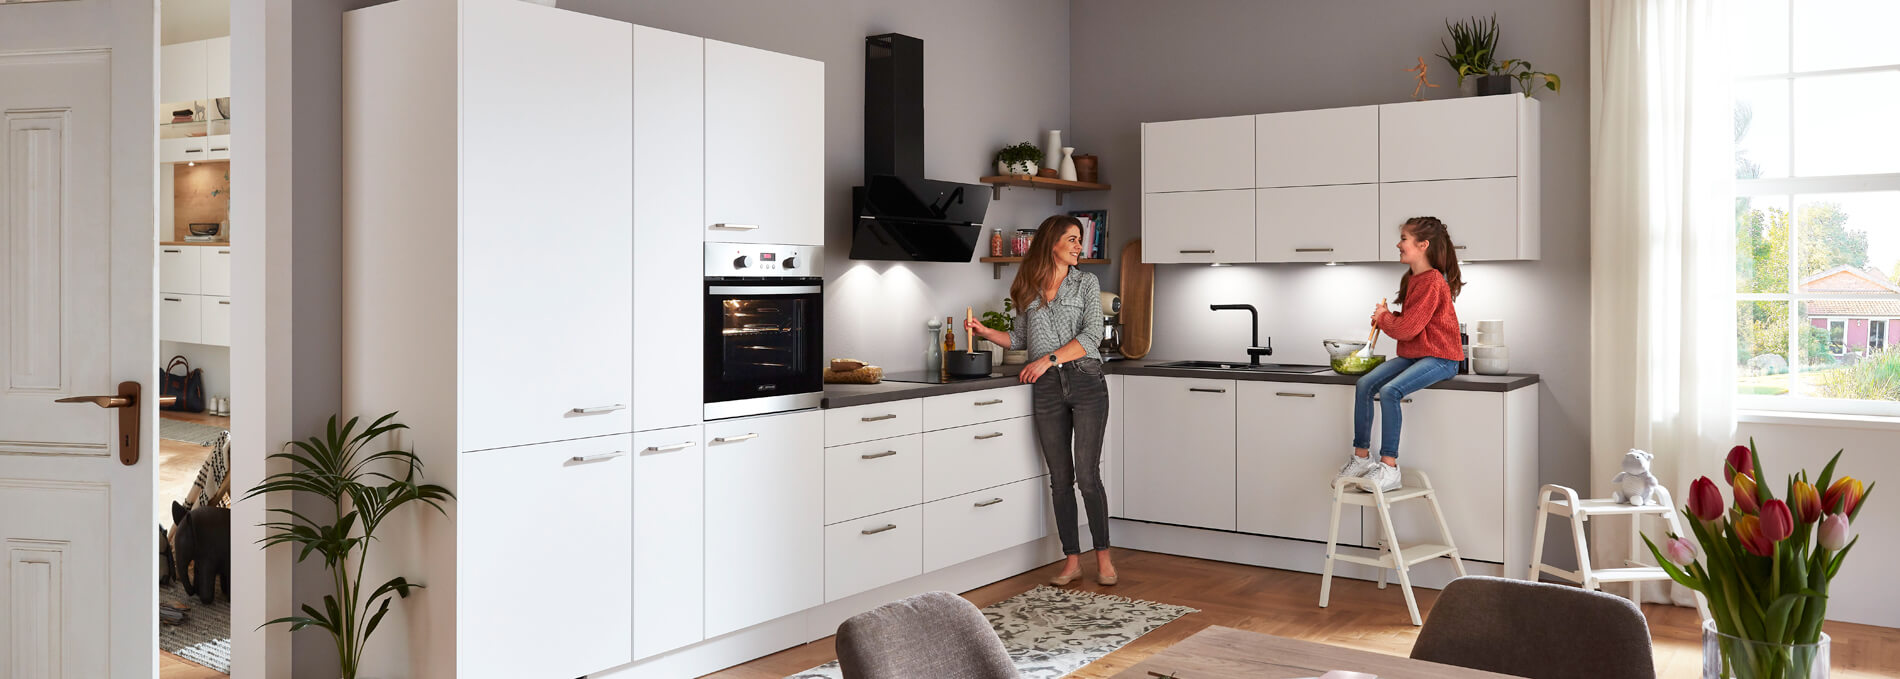 Küchen in Bad elements Schrank online | | nobilia 24h Möbel verfügbar kaufen